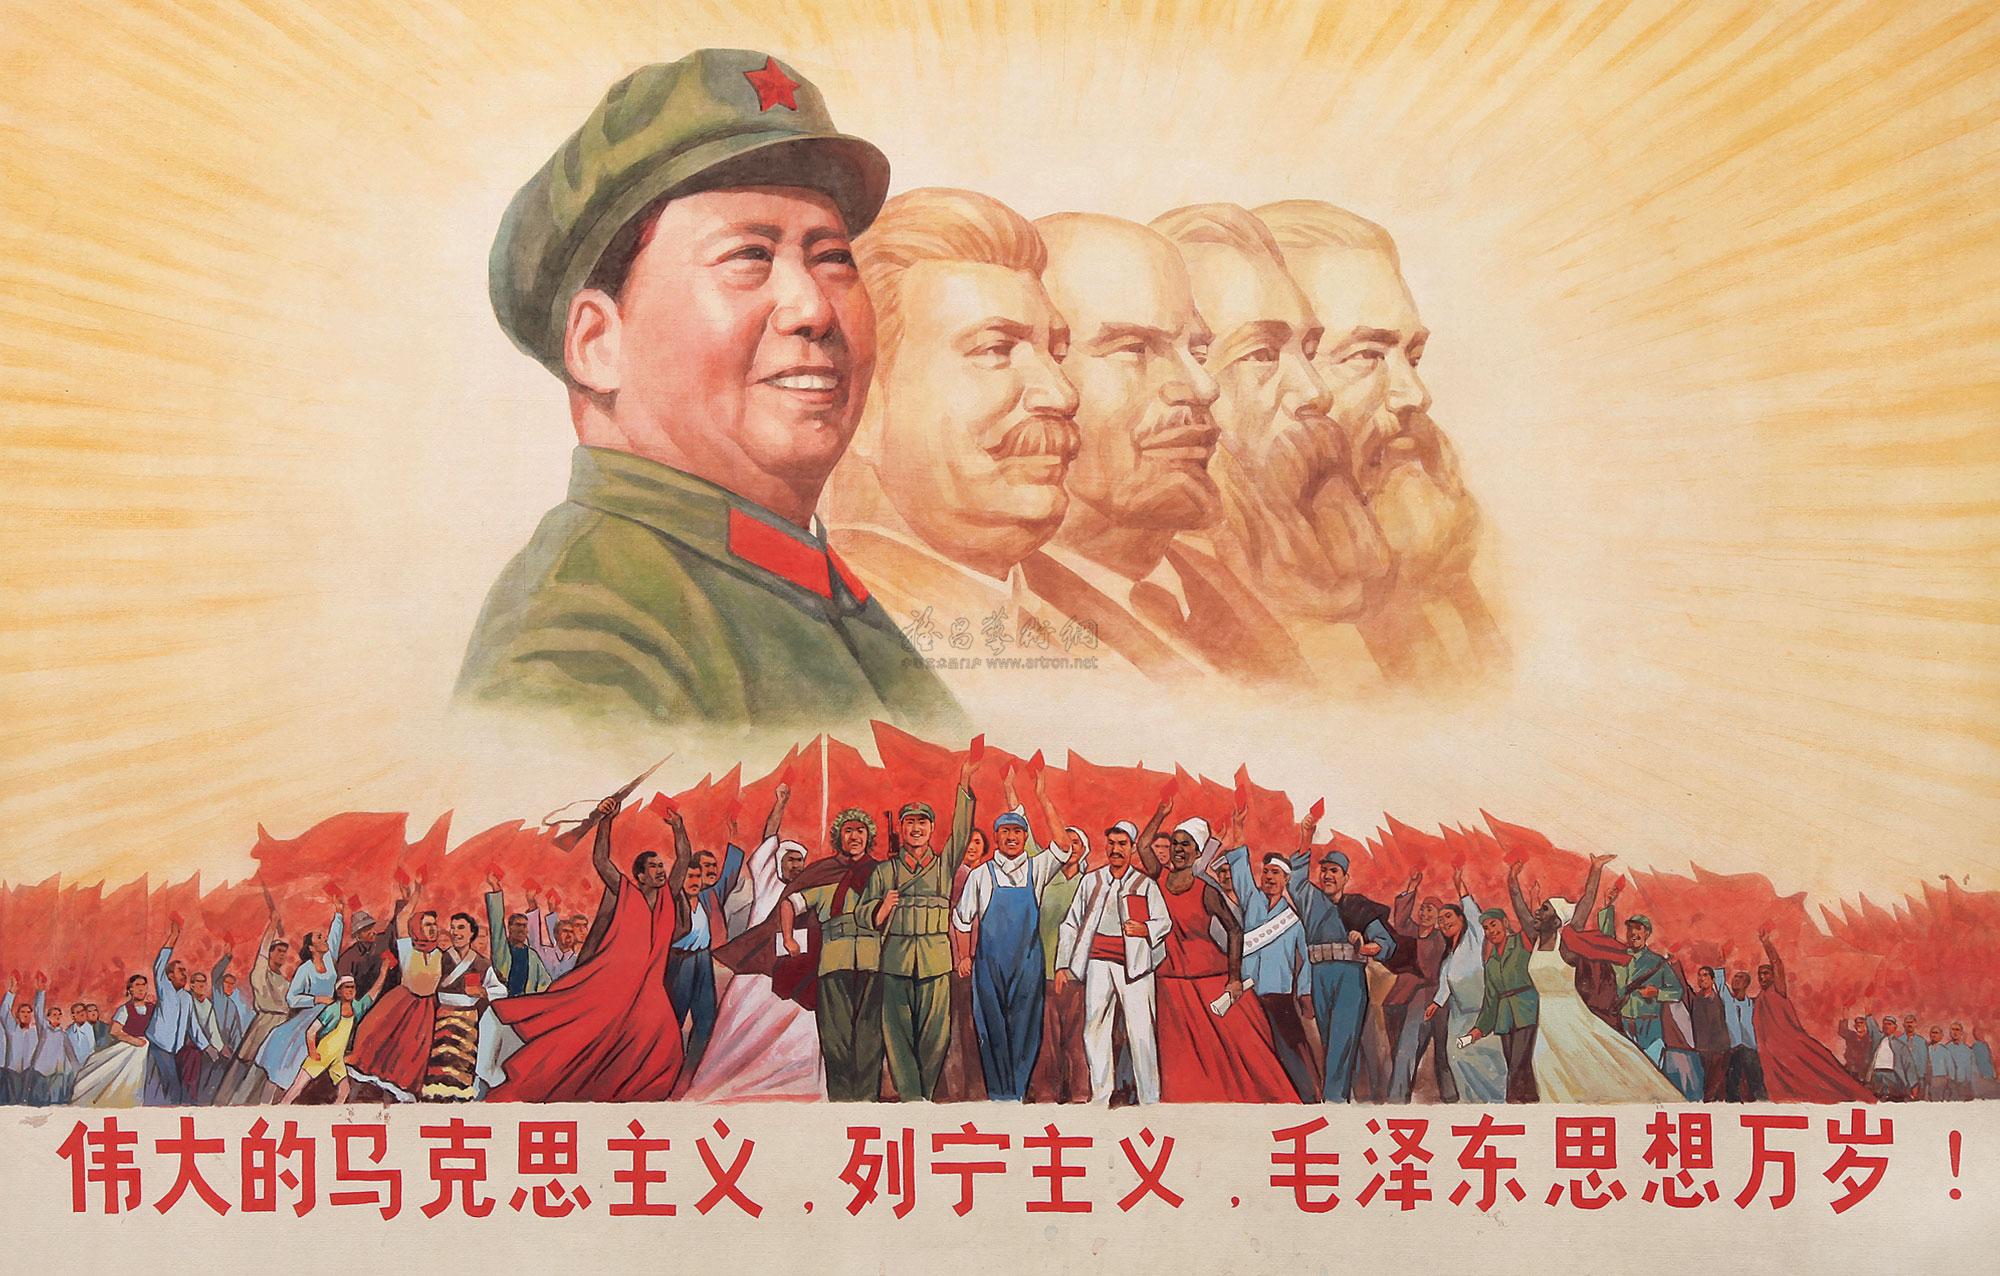 伟大领袖毛主席画像58装饰画超高清大图原图扫描真迹全图书画图片下载